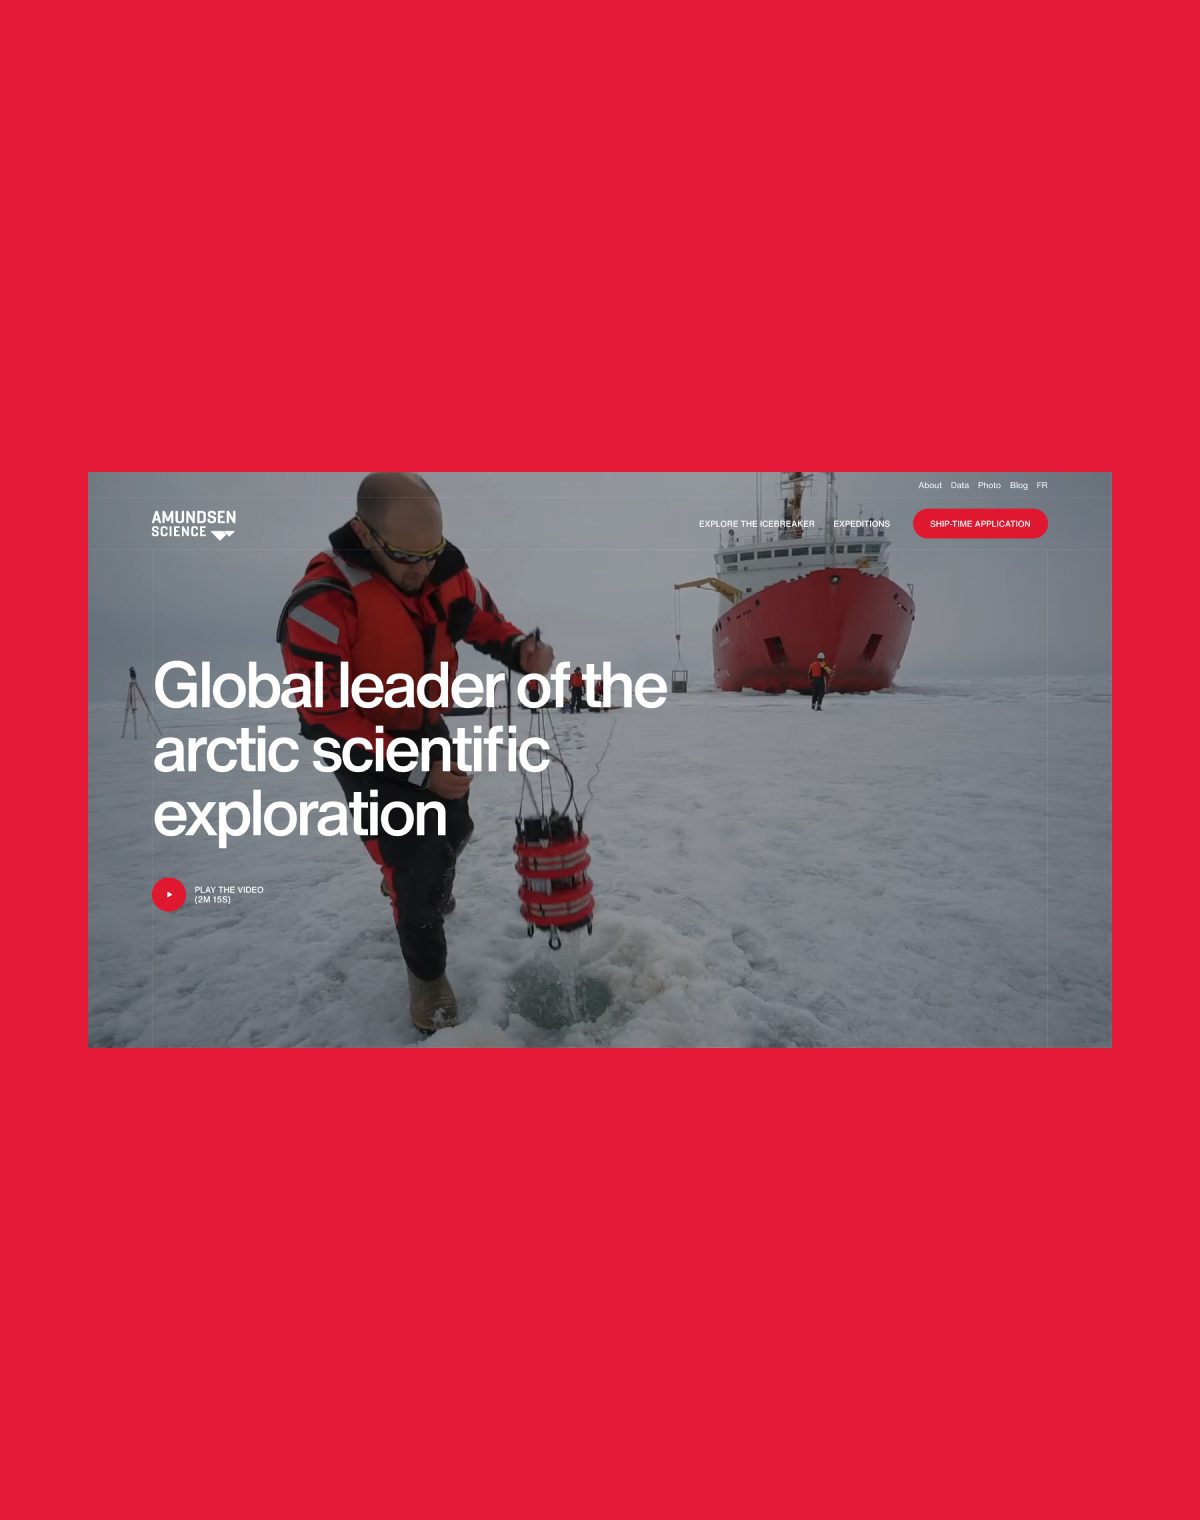 Image à la une pour le projet Amundsen Science